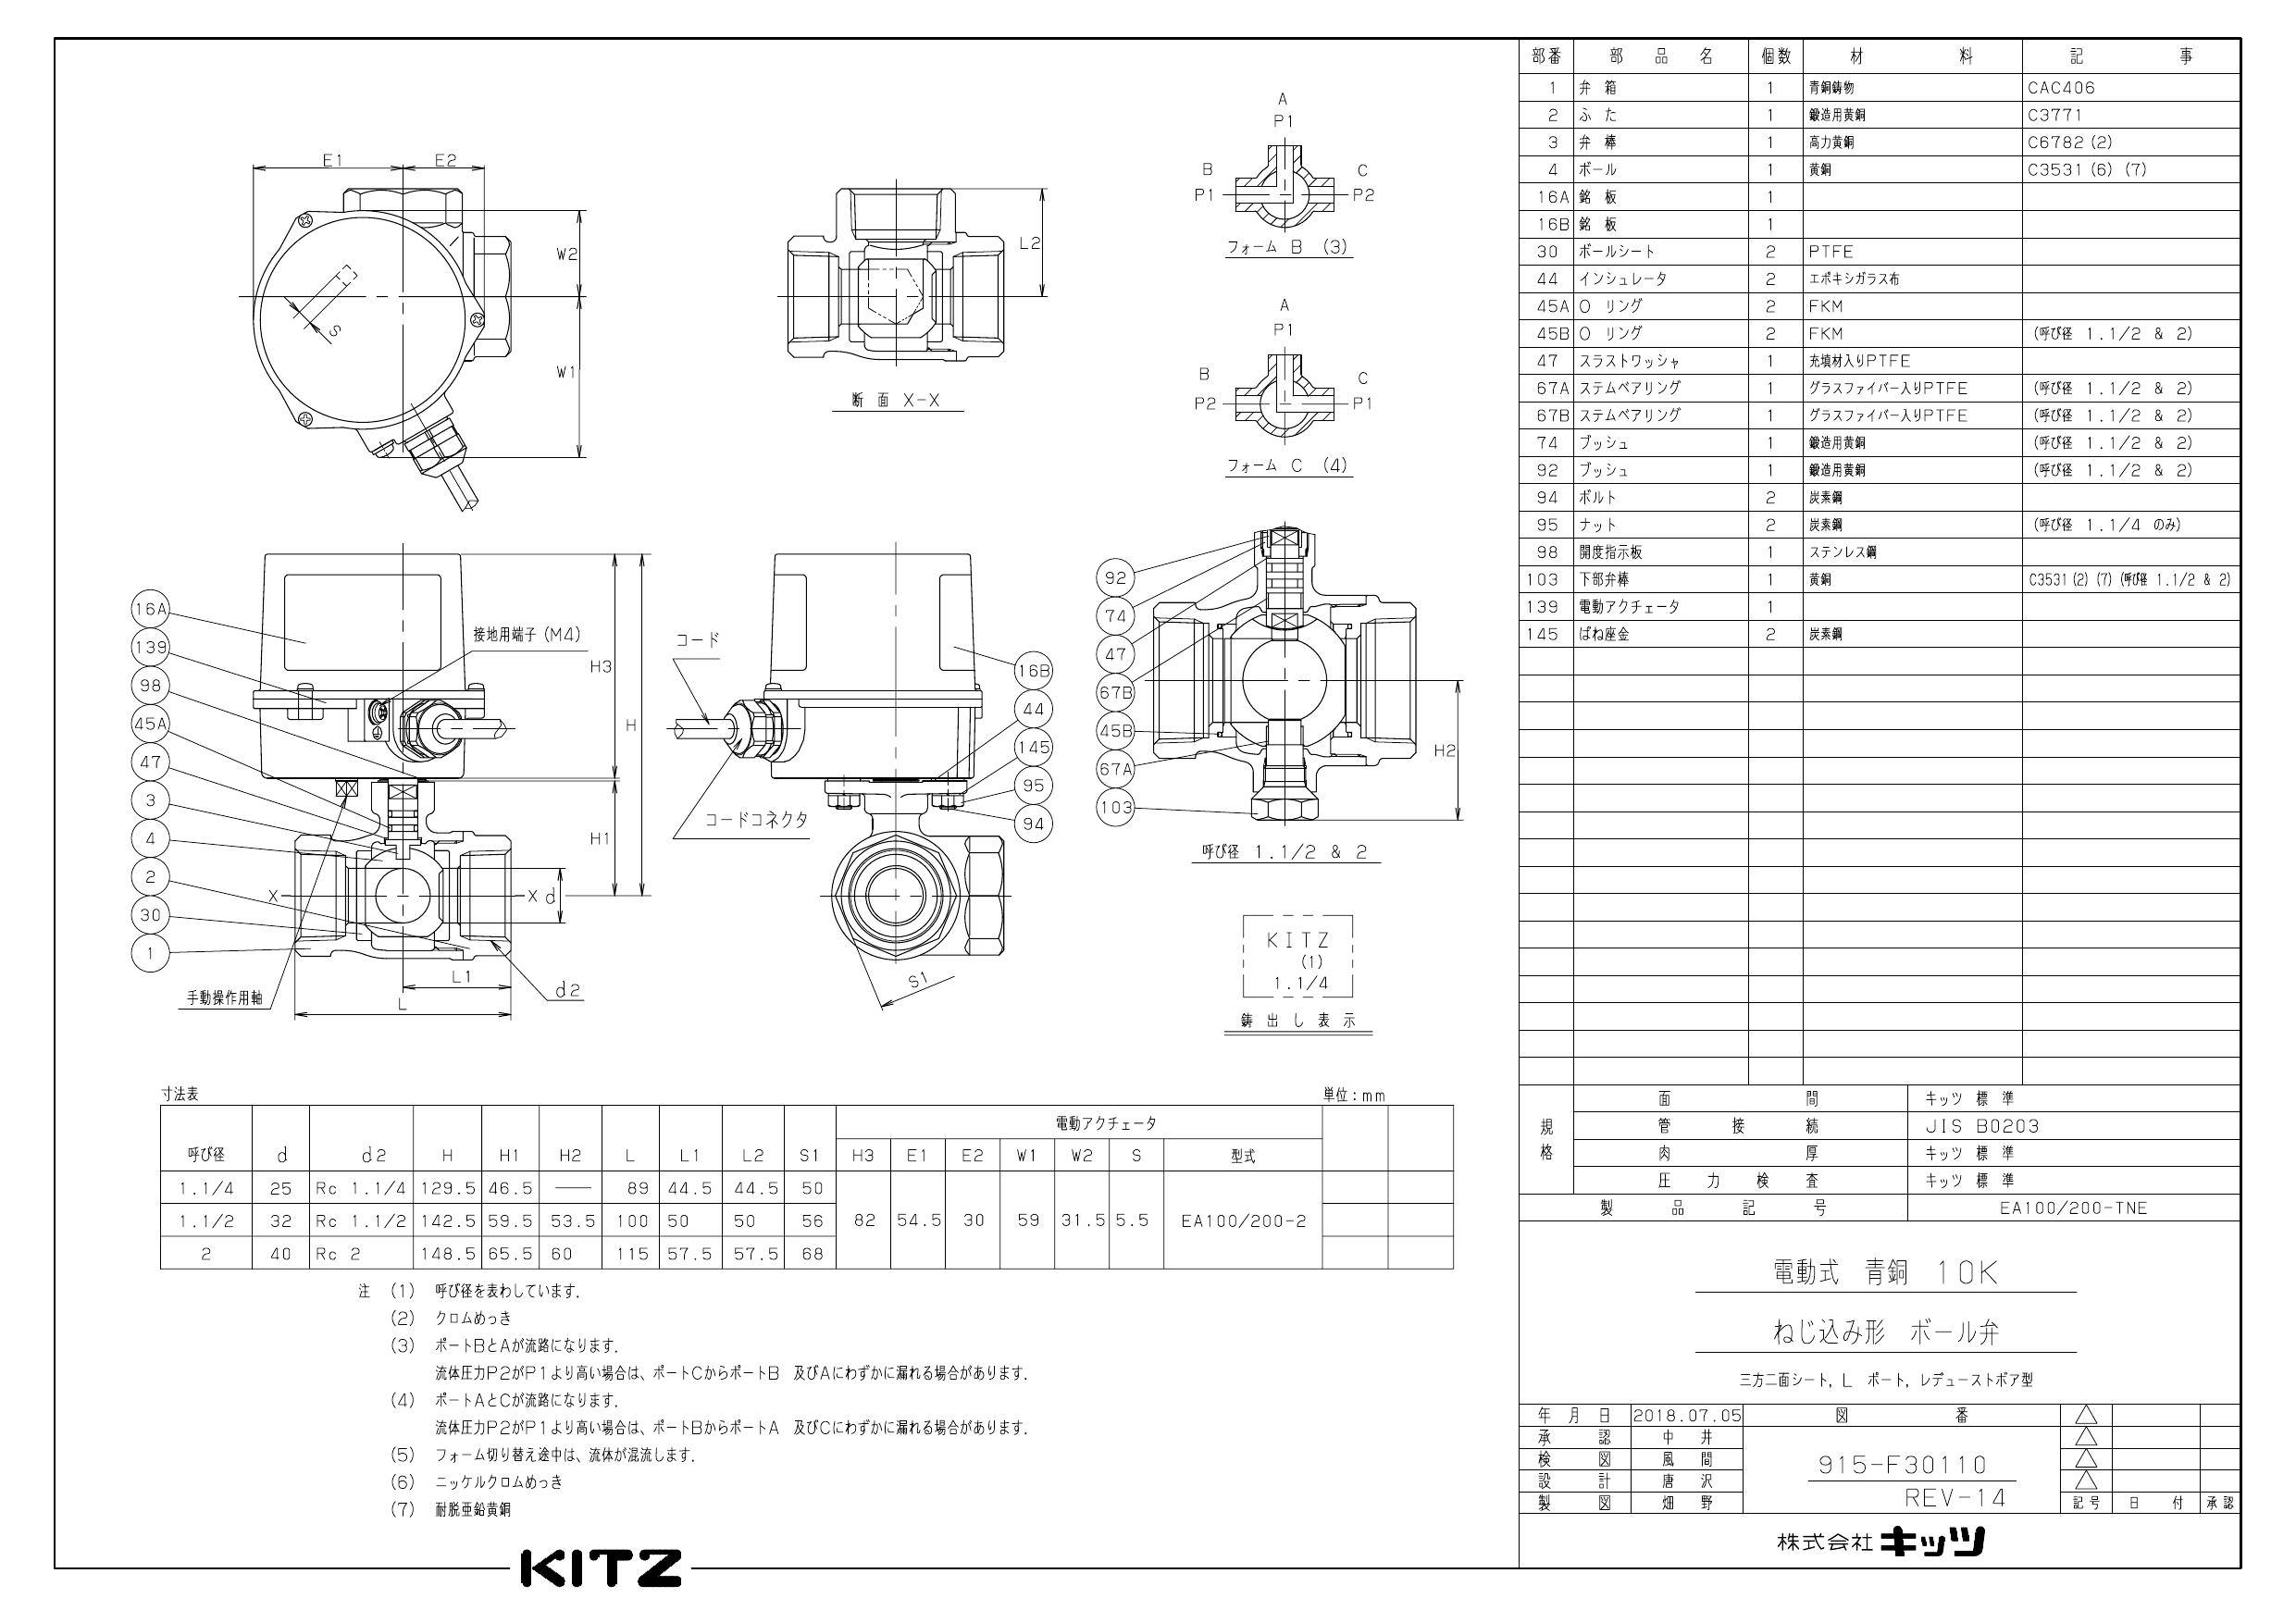 キッツ EA200-TNE 青銅電動三方ボール弁 32A EA200-TNE 32A ▽1005987